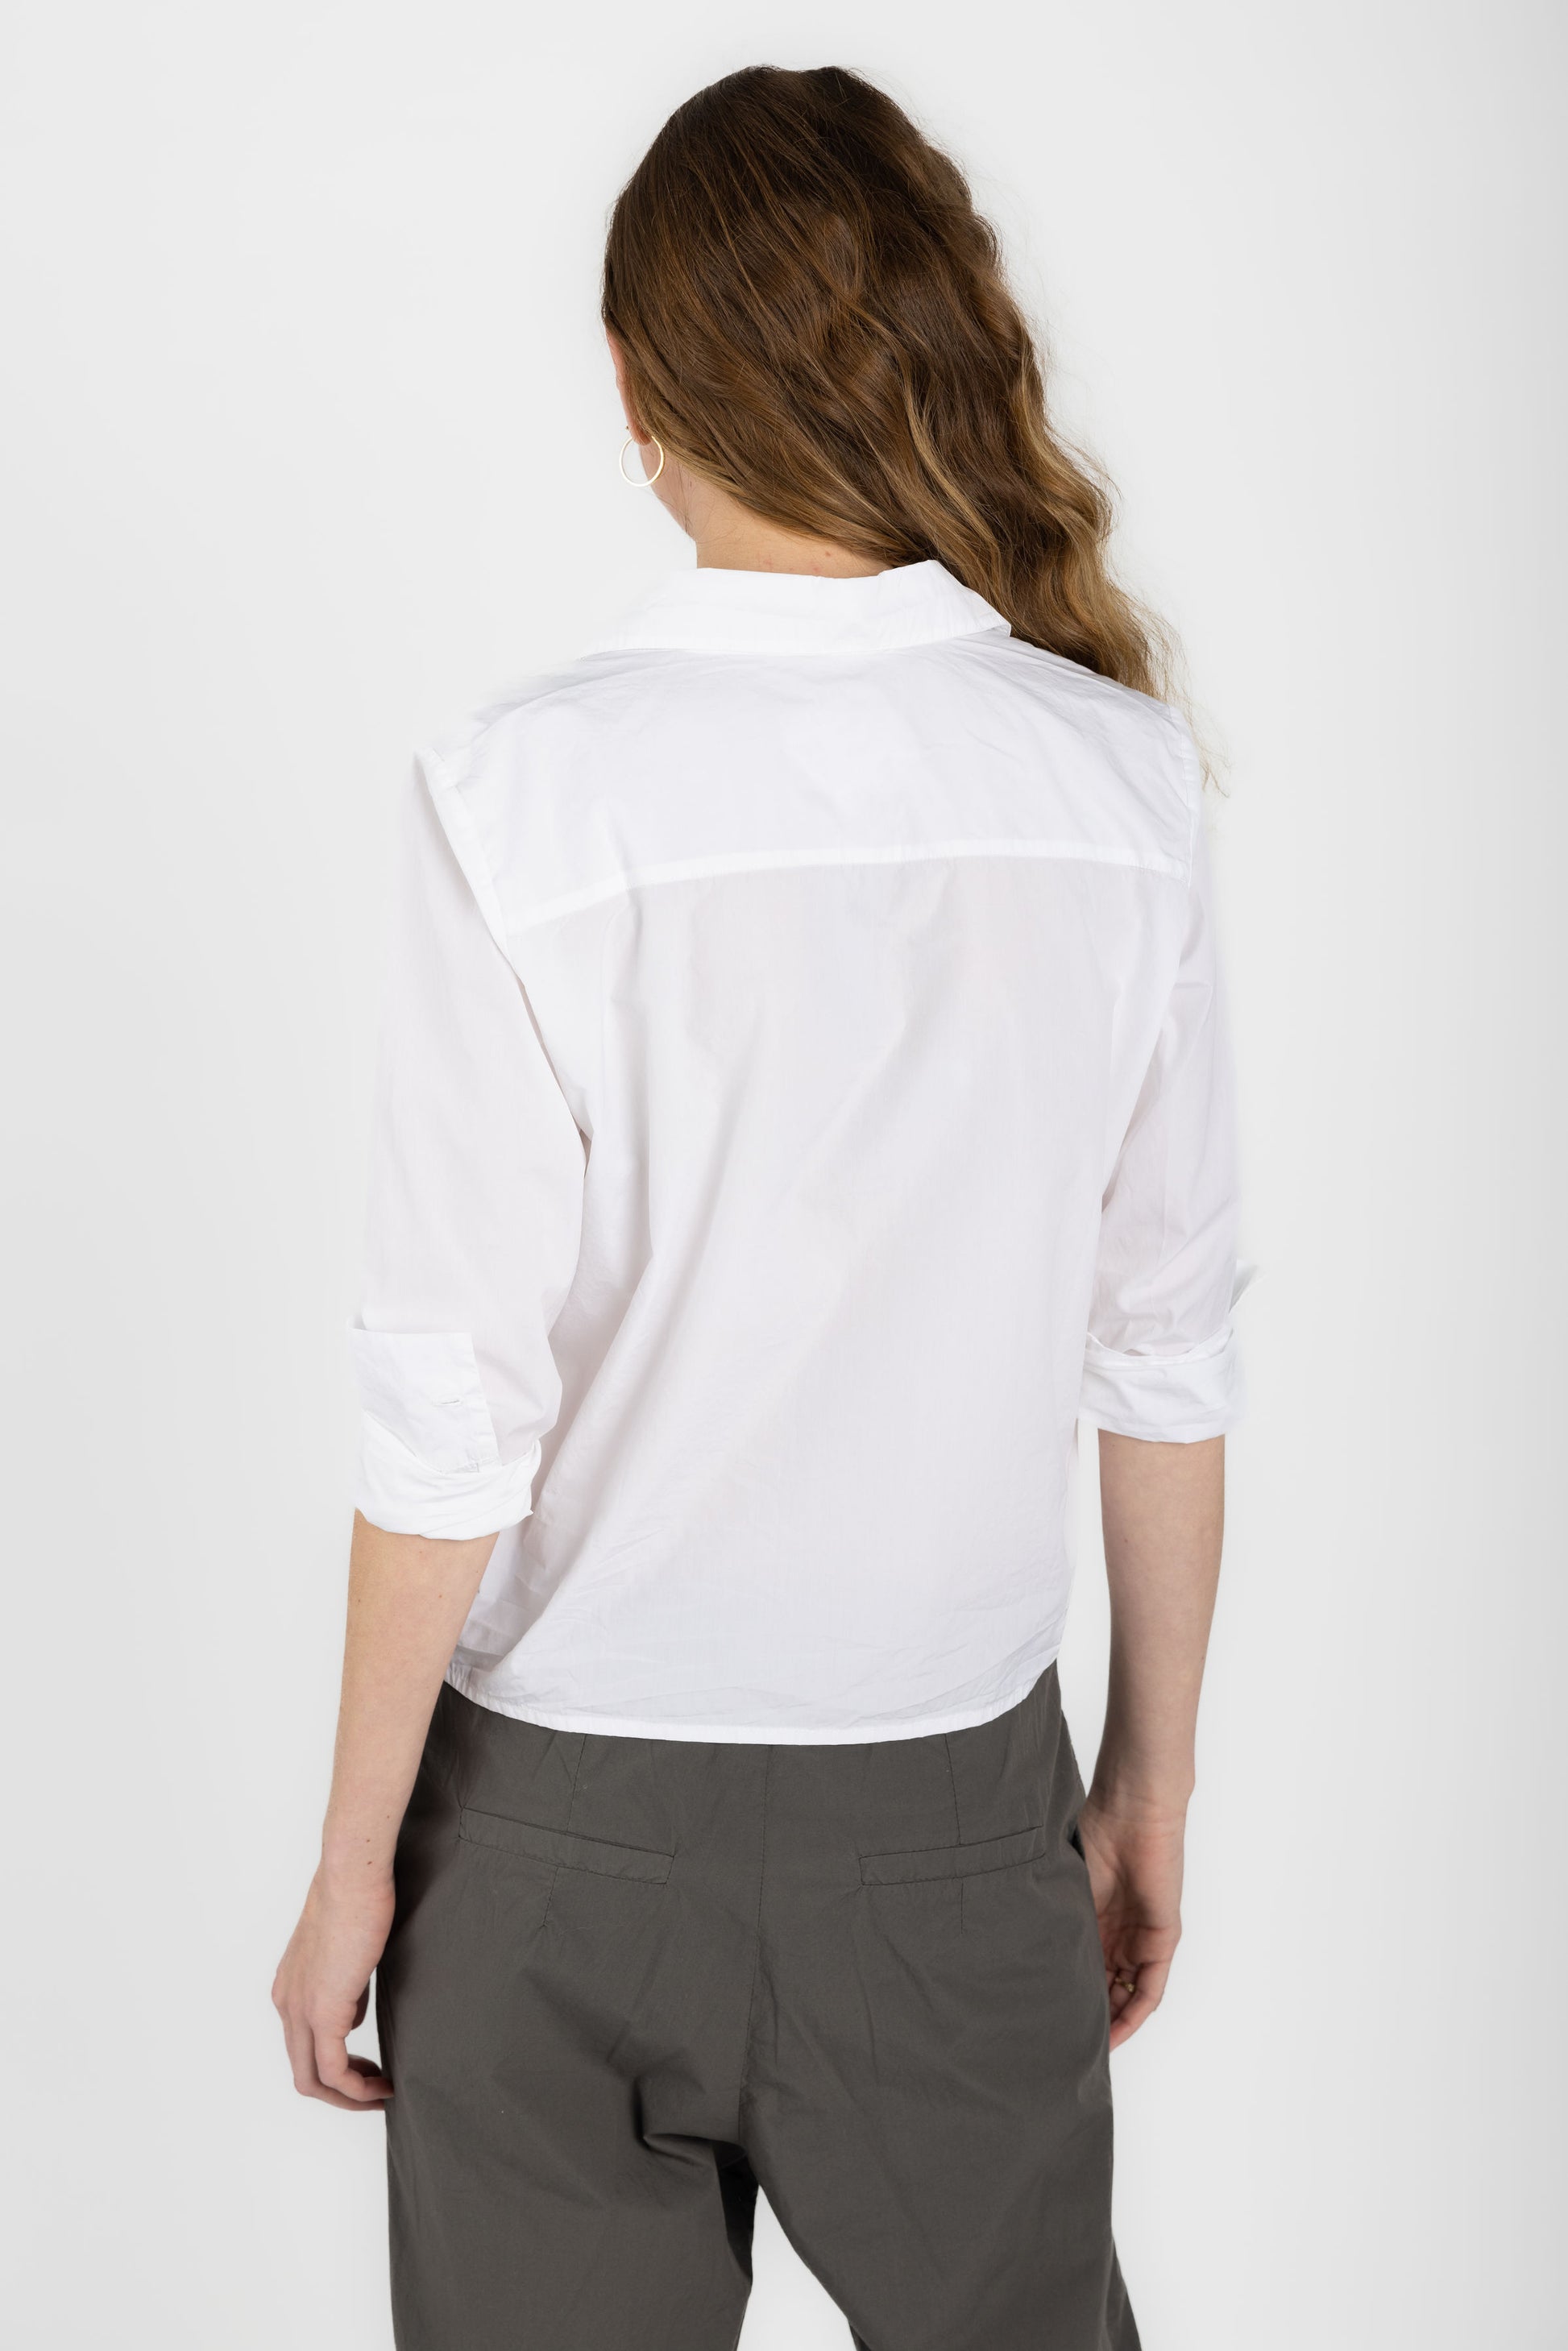 PRIVATE 0204 Ultra Fine Poplin Cotton Shirt in White